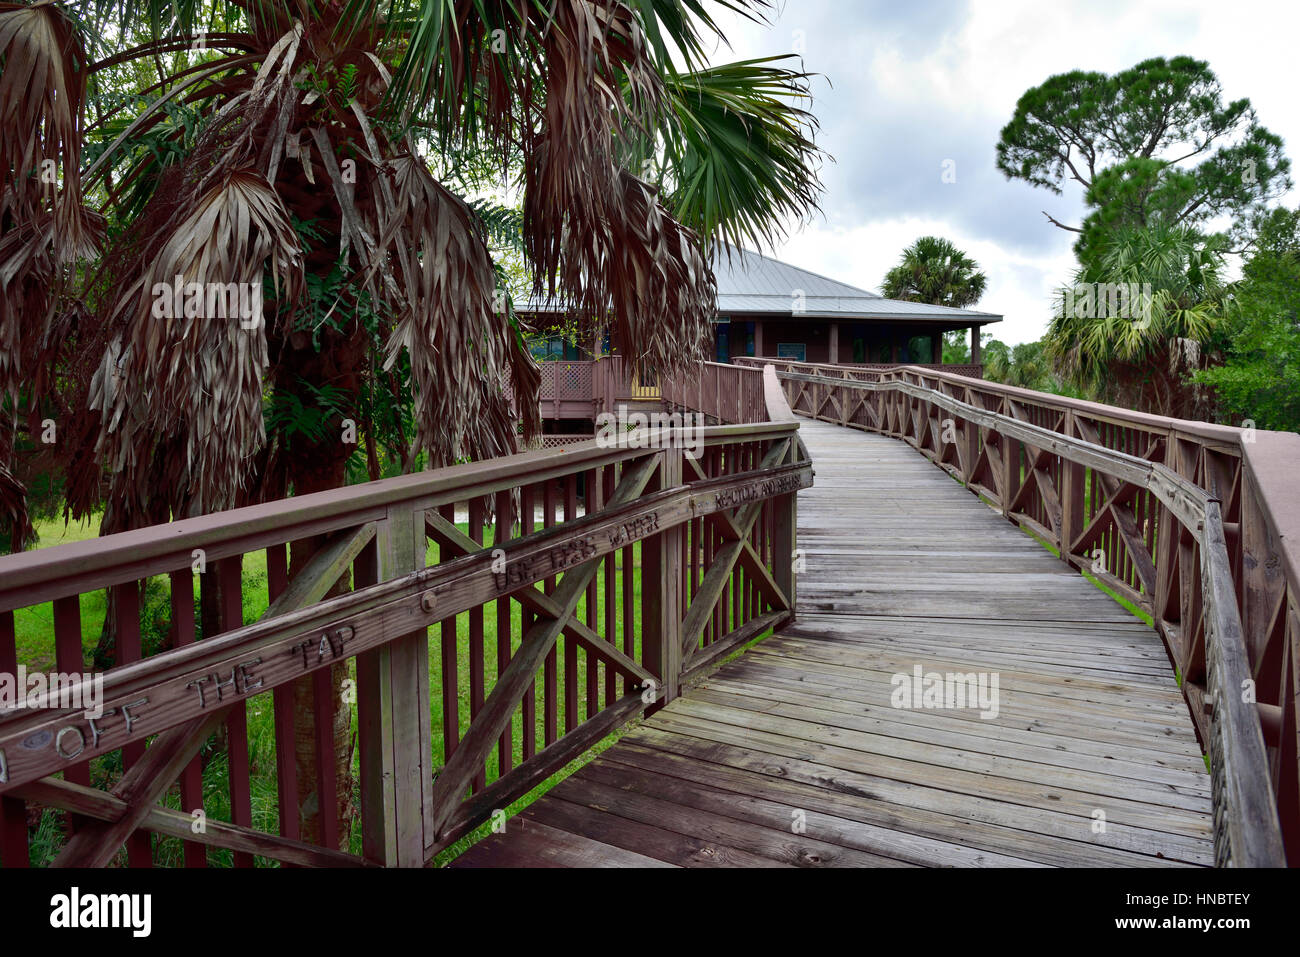 Scheda sollevata a piedi il sentiero in Charlotte Harbor centro ambientale, Cape Coral, Florida. Sollevata per proteggere dalle inondazioni e alligatori. Foto Stock